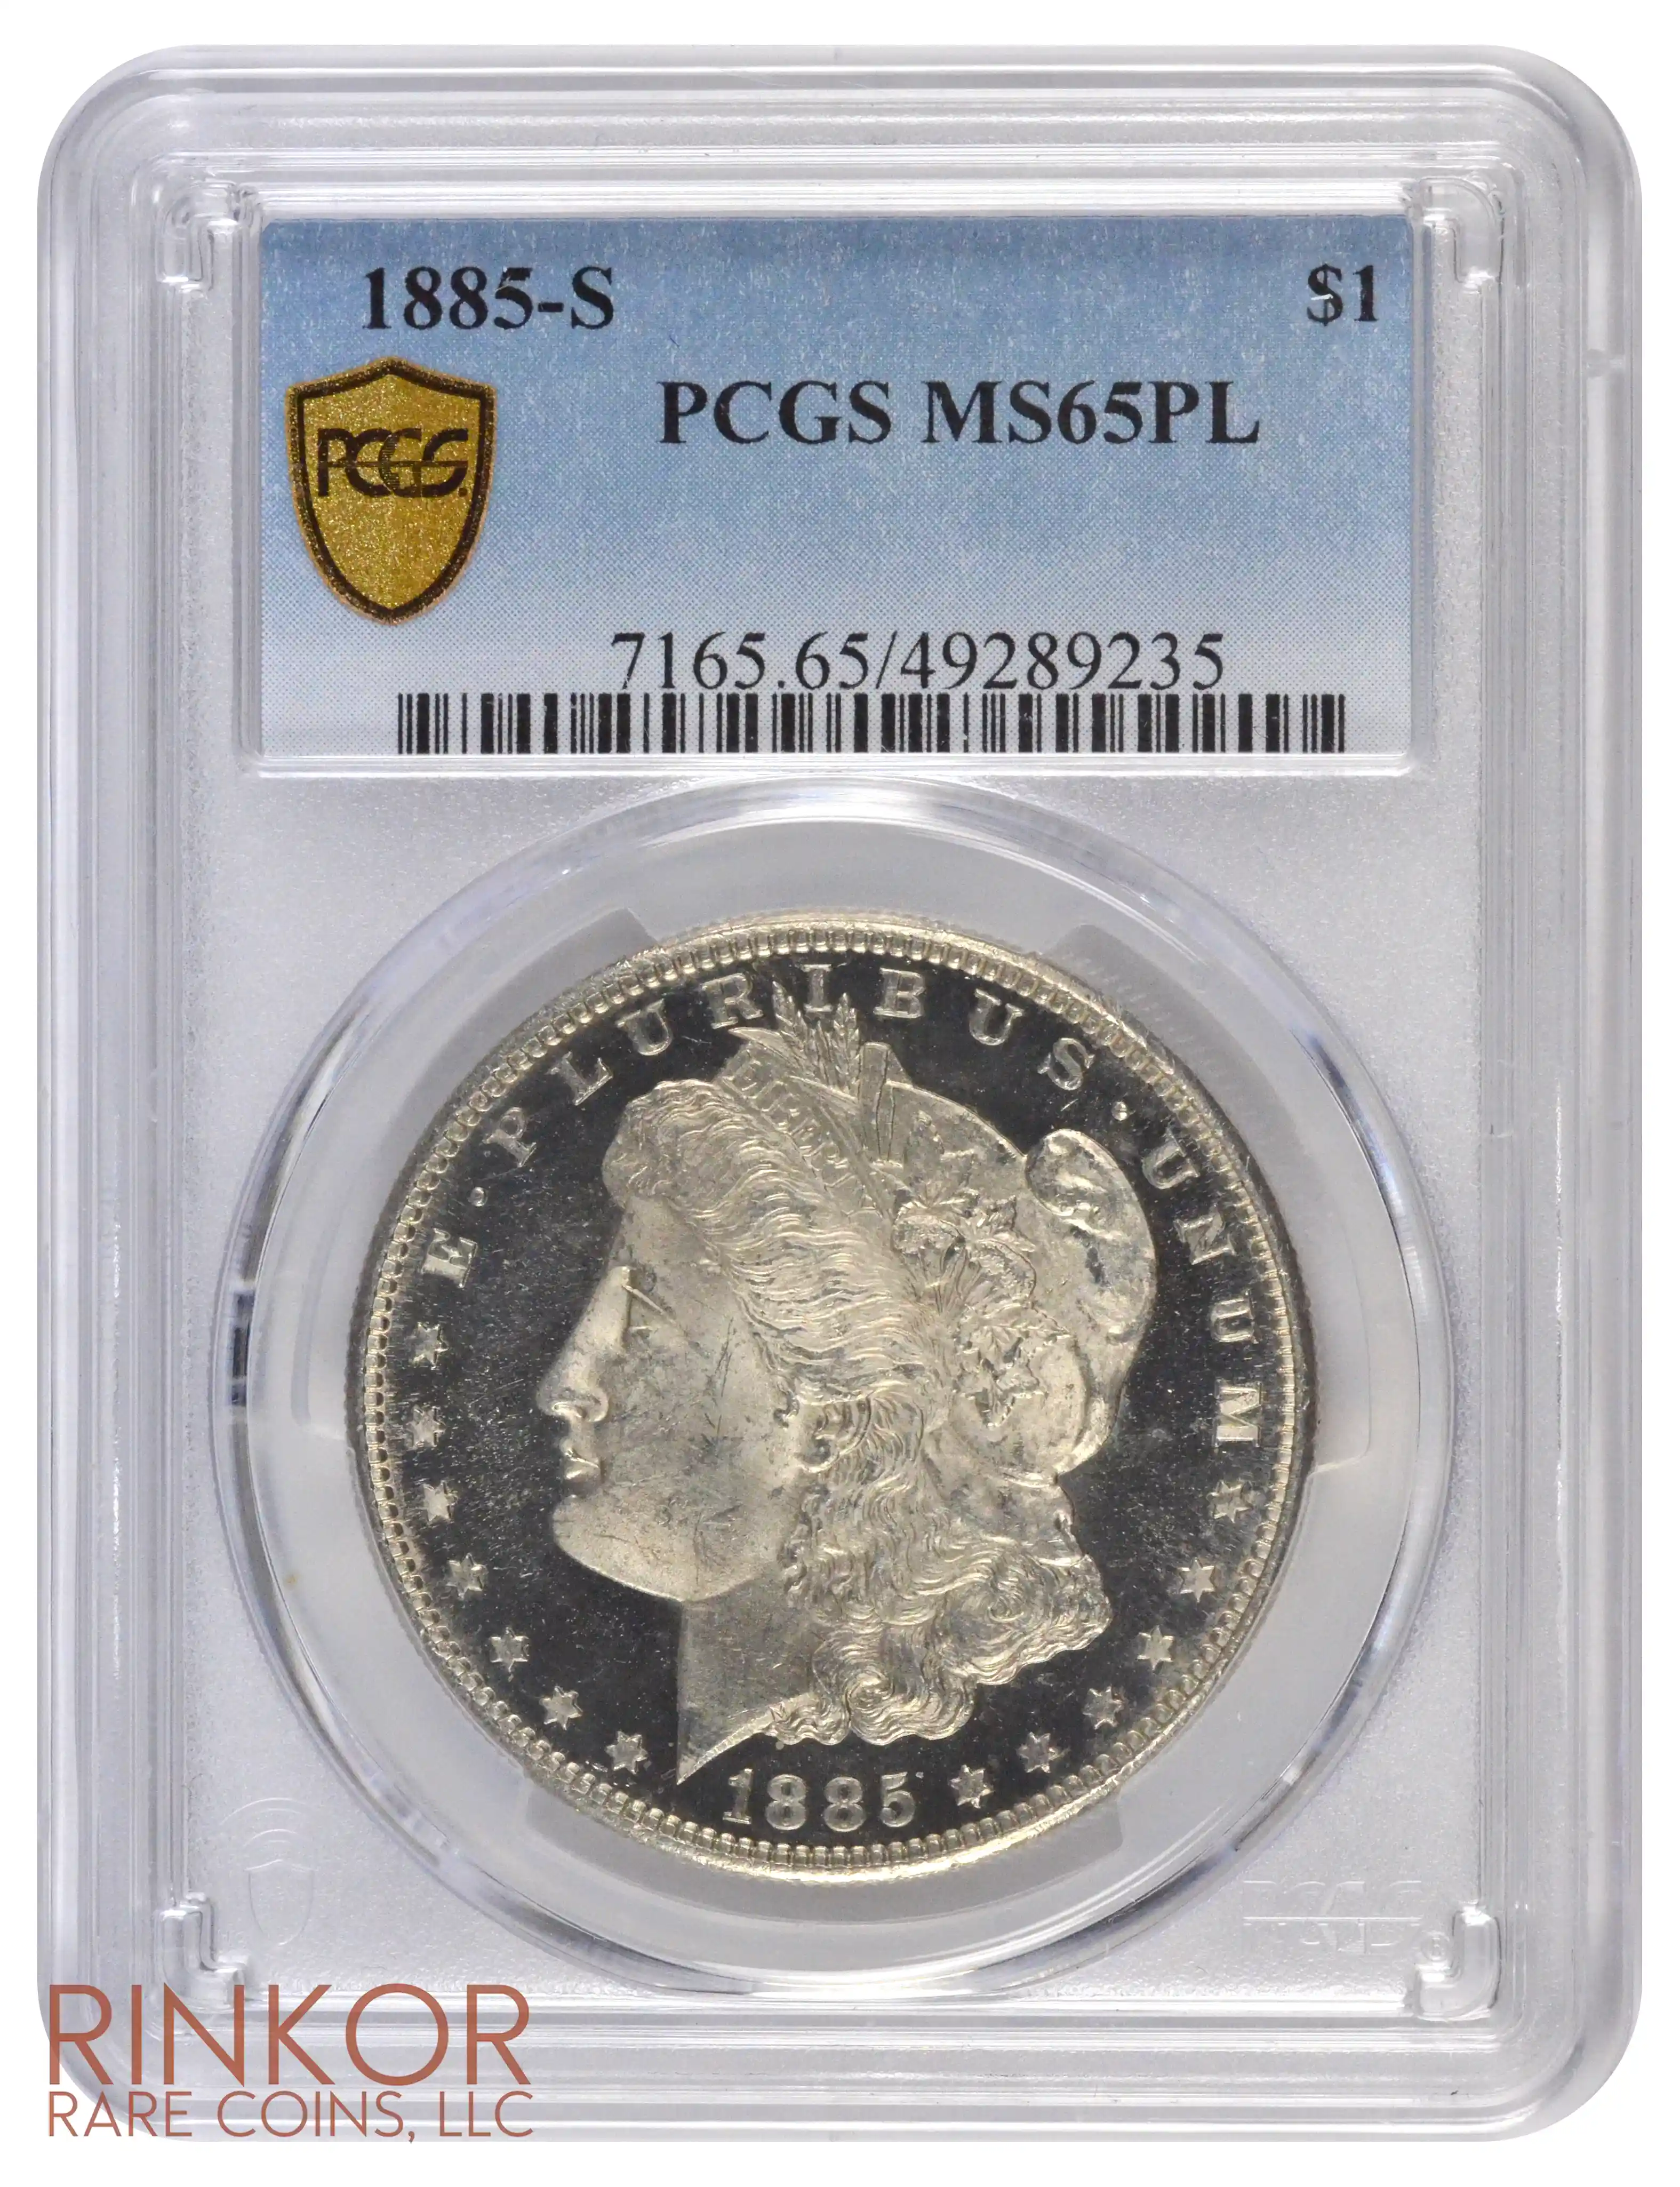 1885-S $1 PCGS MS 65 PL